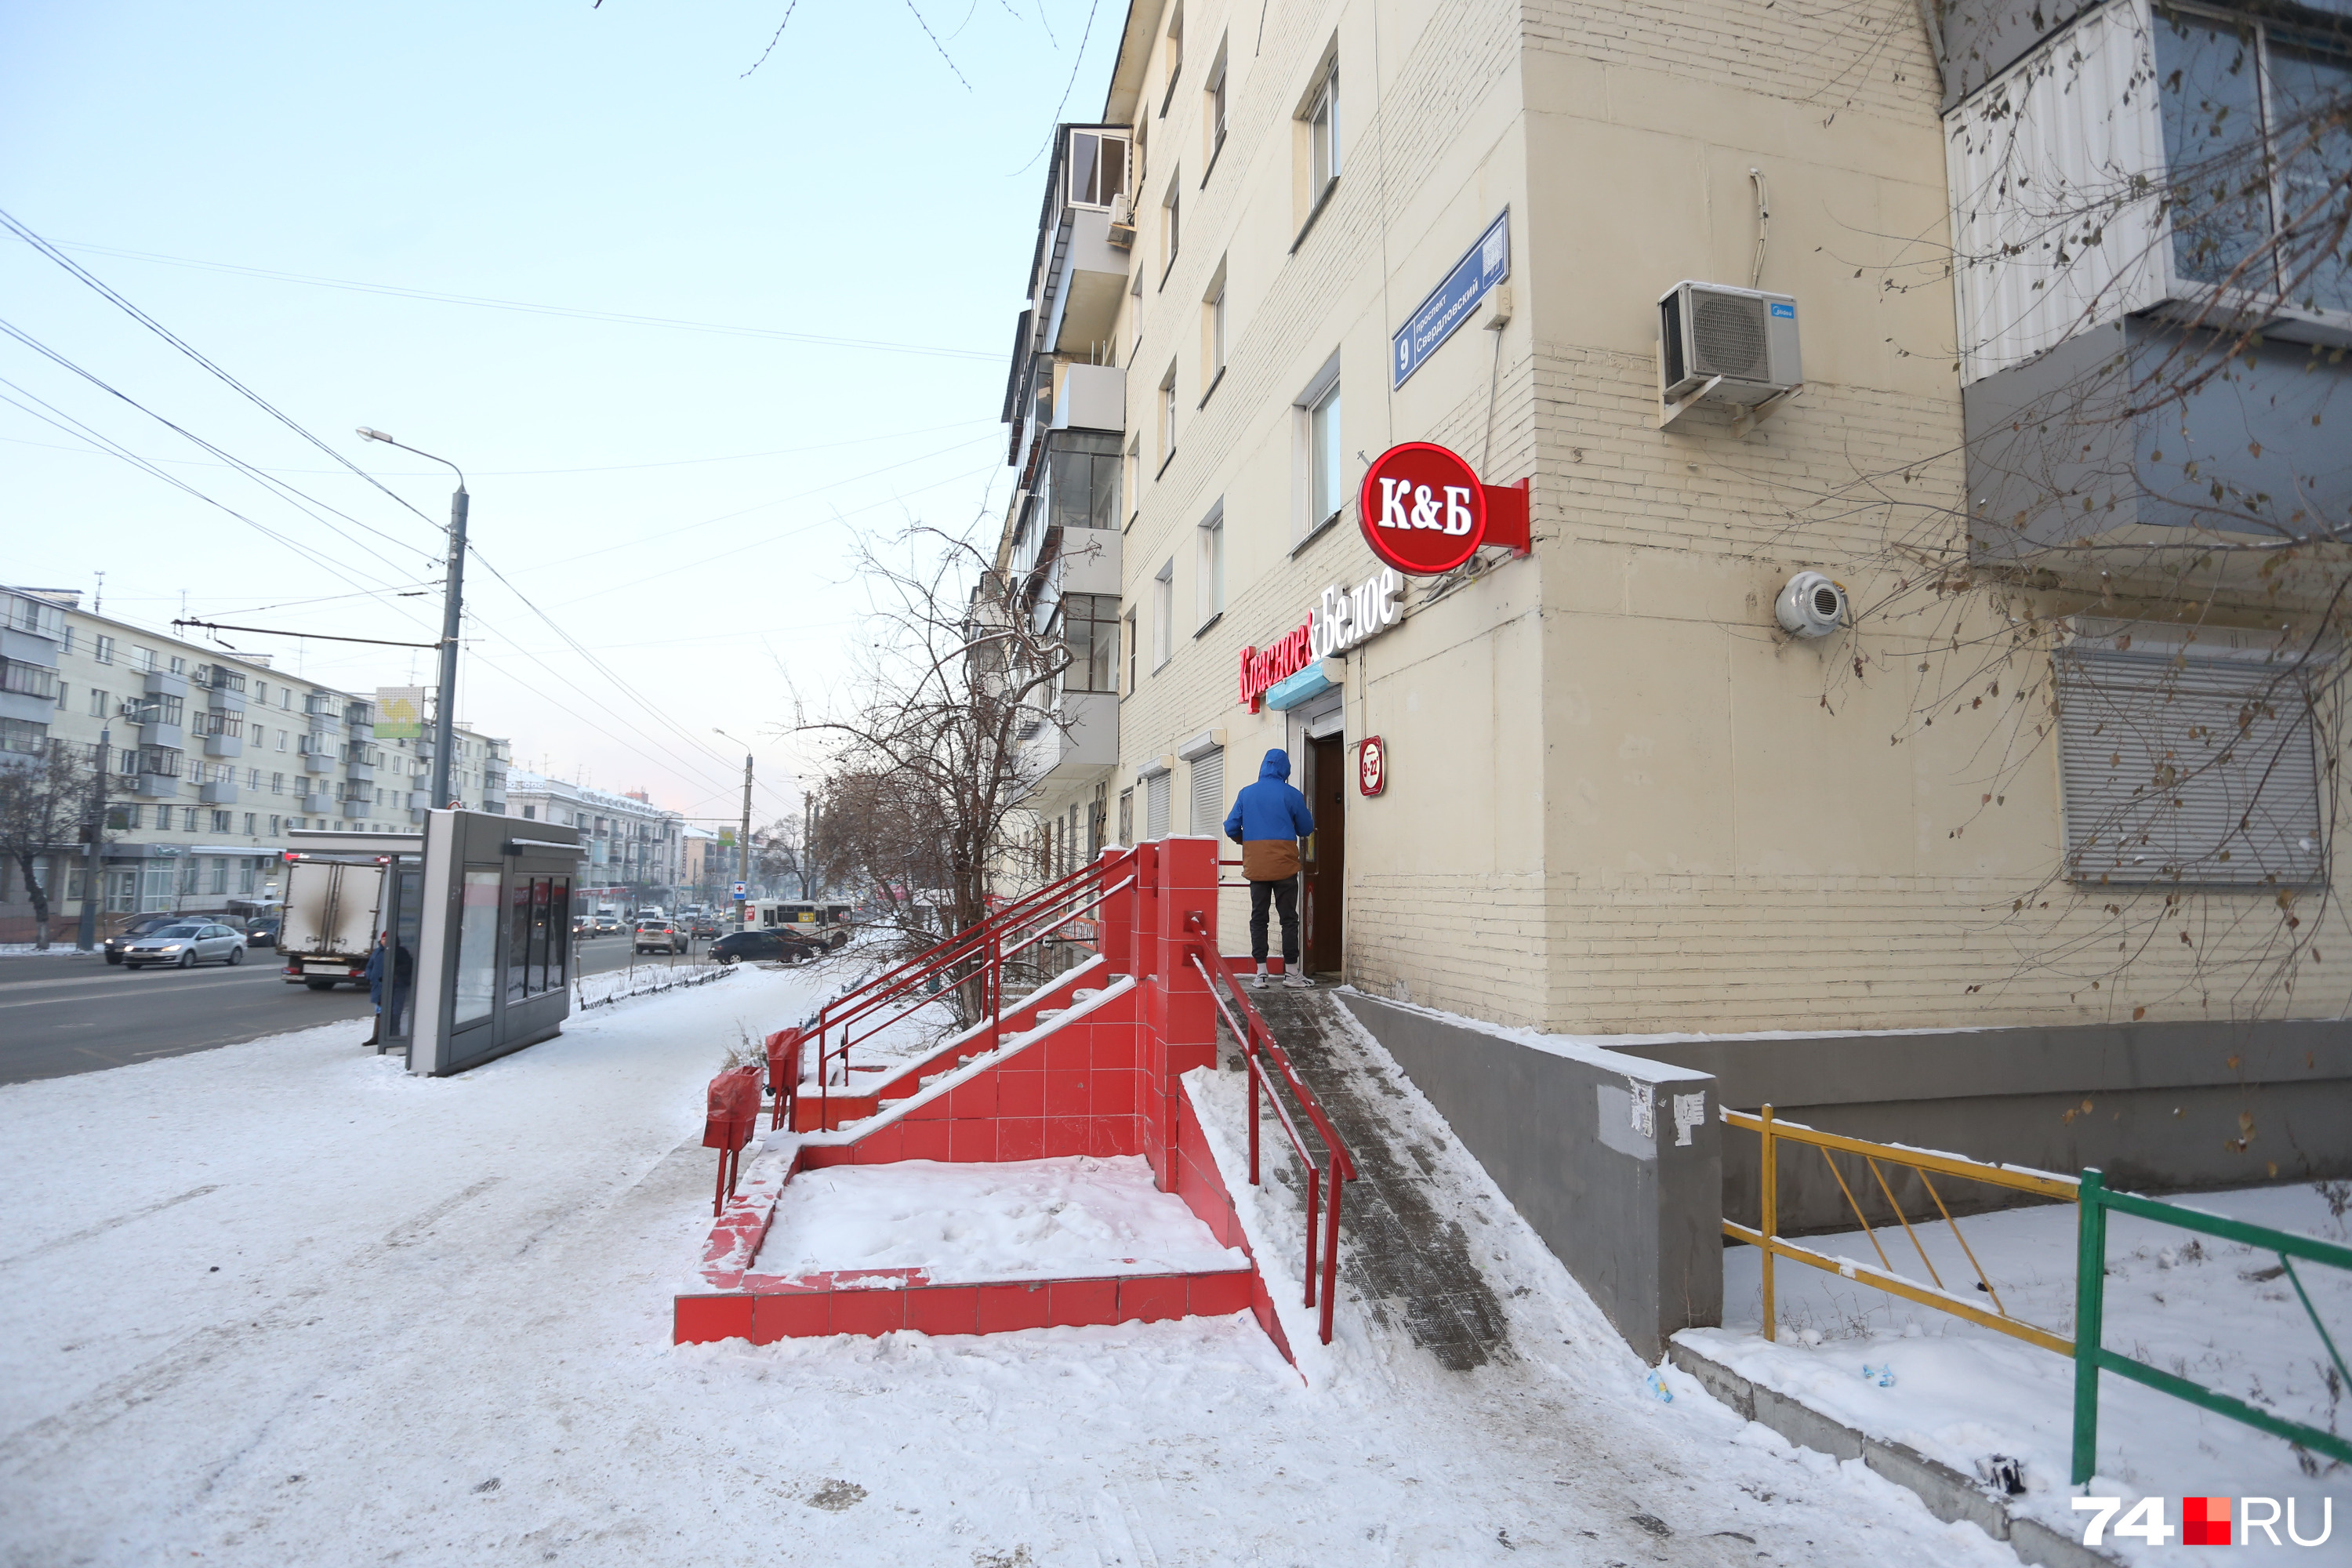 Инцидент произошел в точке «К&Б» на Свердловском проспекте, 9